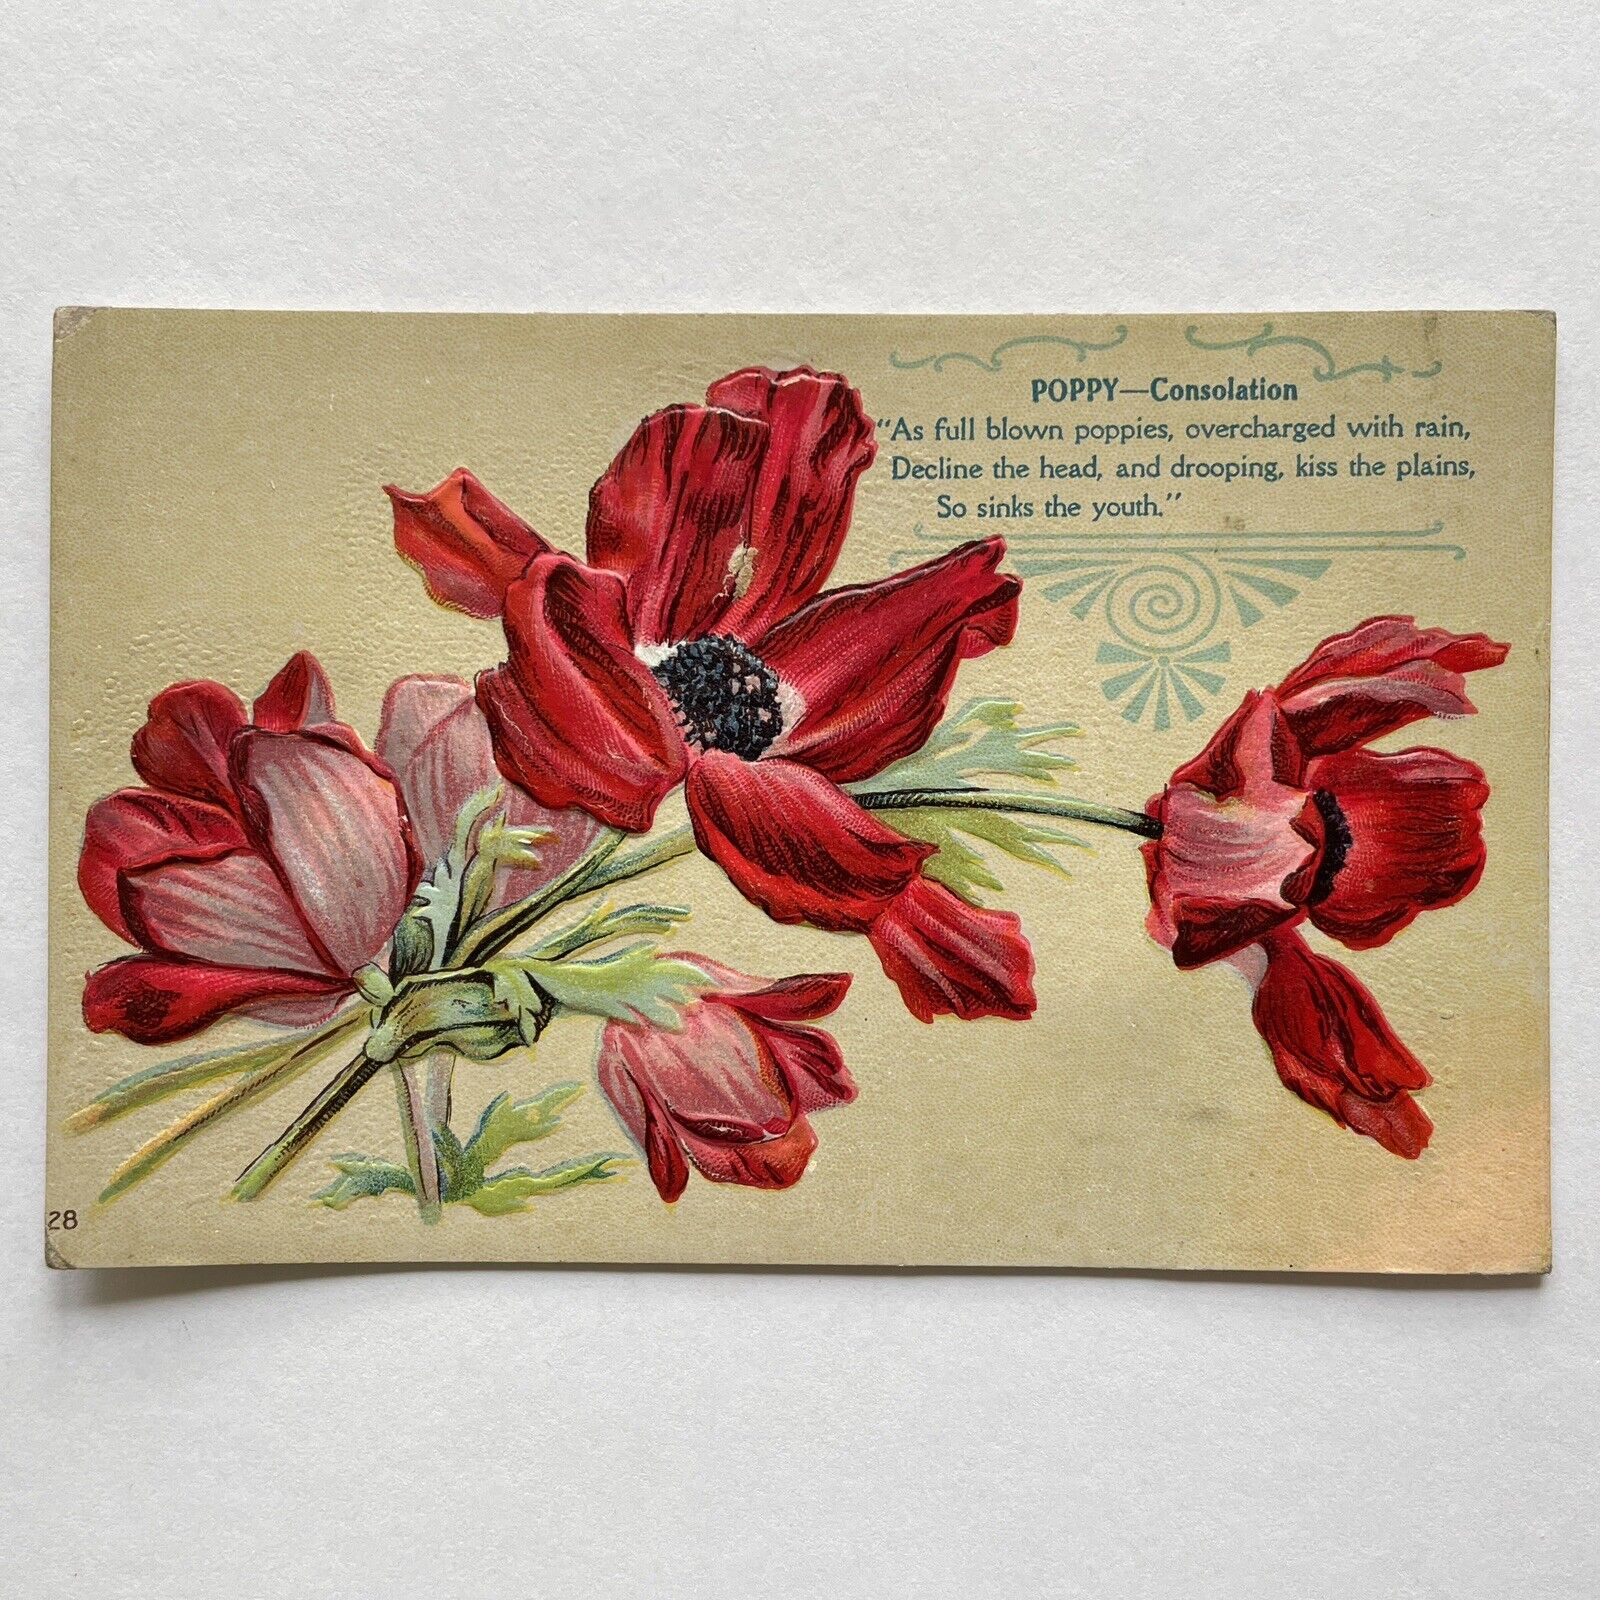 RED POPPIES & POEM Postcard c1906 Embossed Poppy Flowers